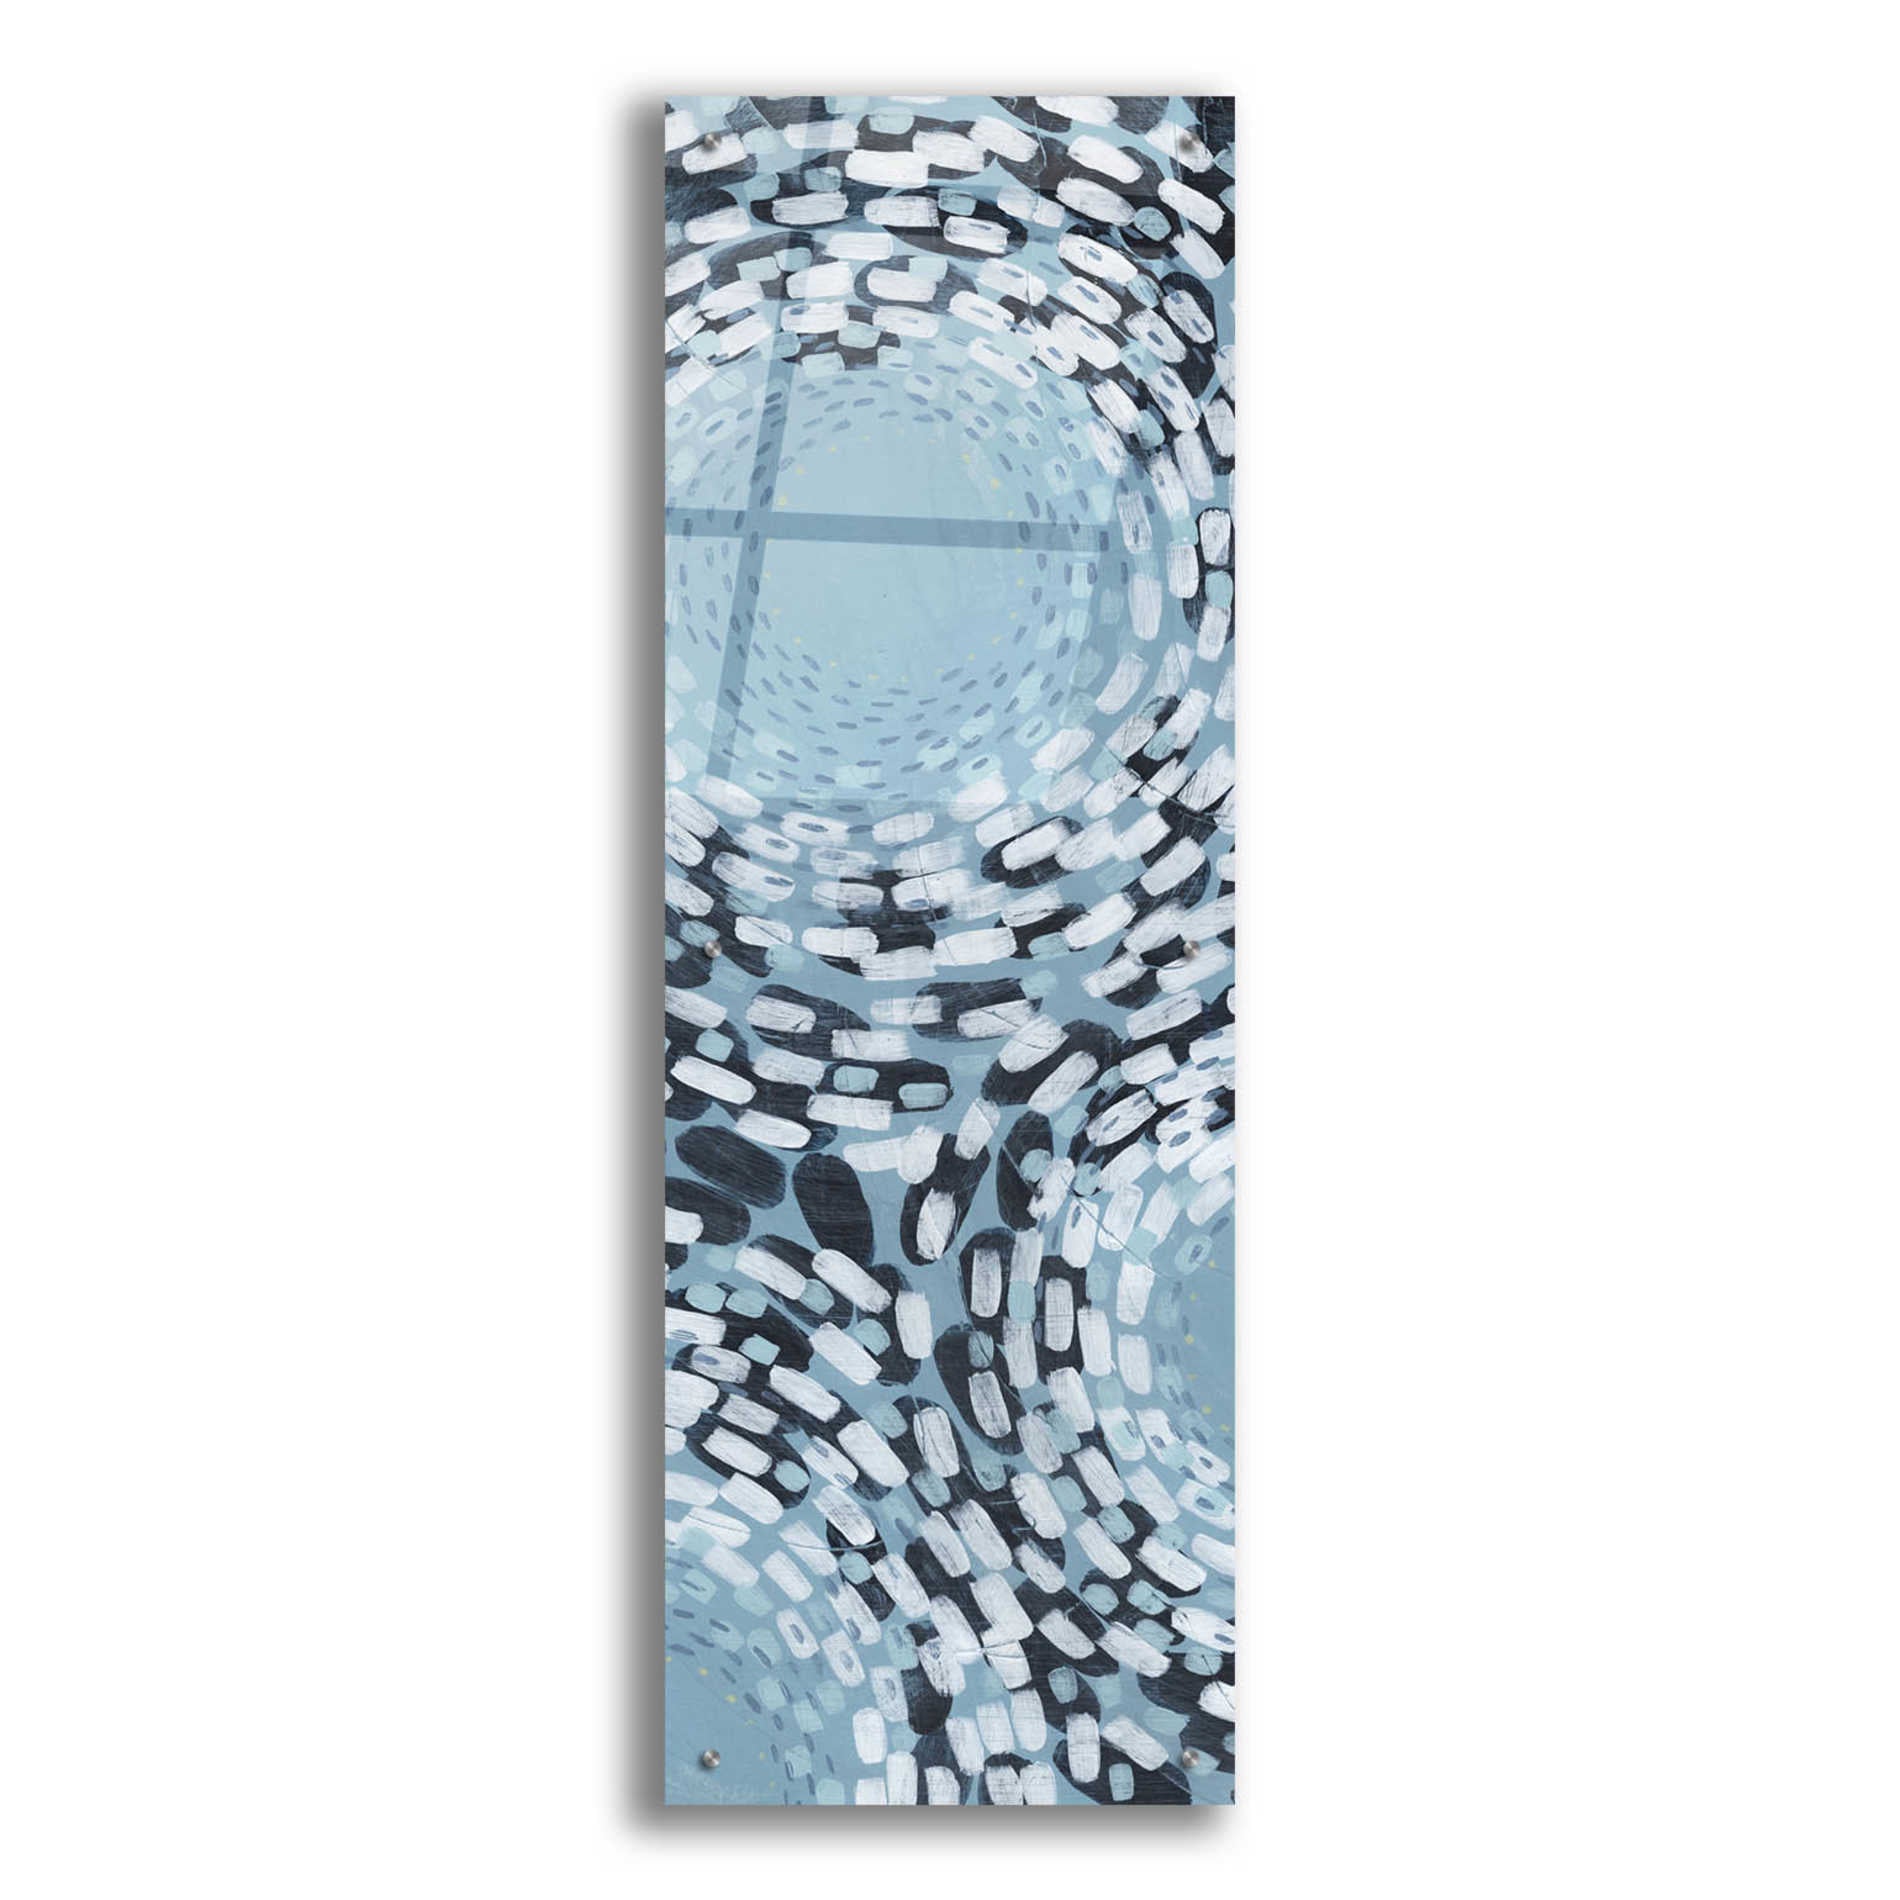 Epic Art 'Whirlpool II' by Grace Popp,Acrylic Glass Wall Art,16x48